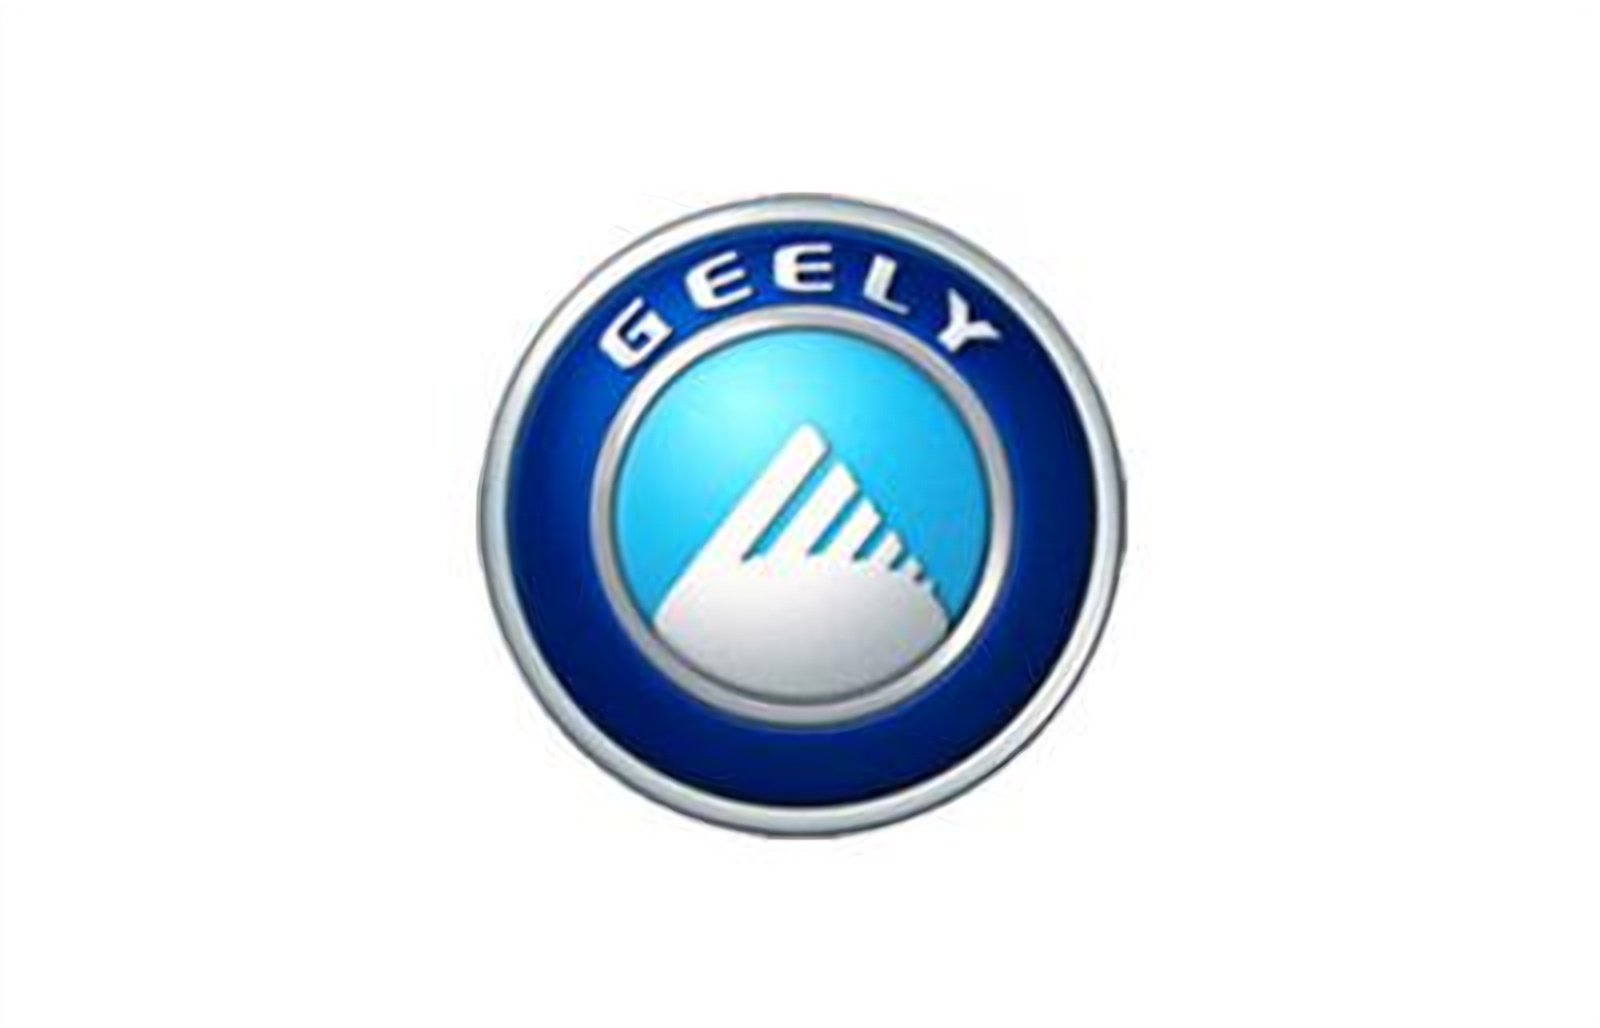 logo della collezione batterie geely di puntobatterie